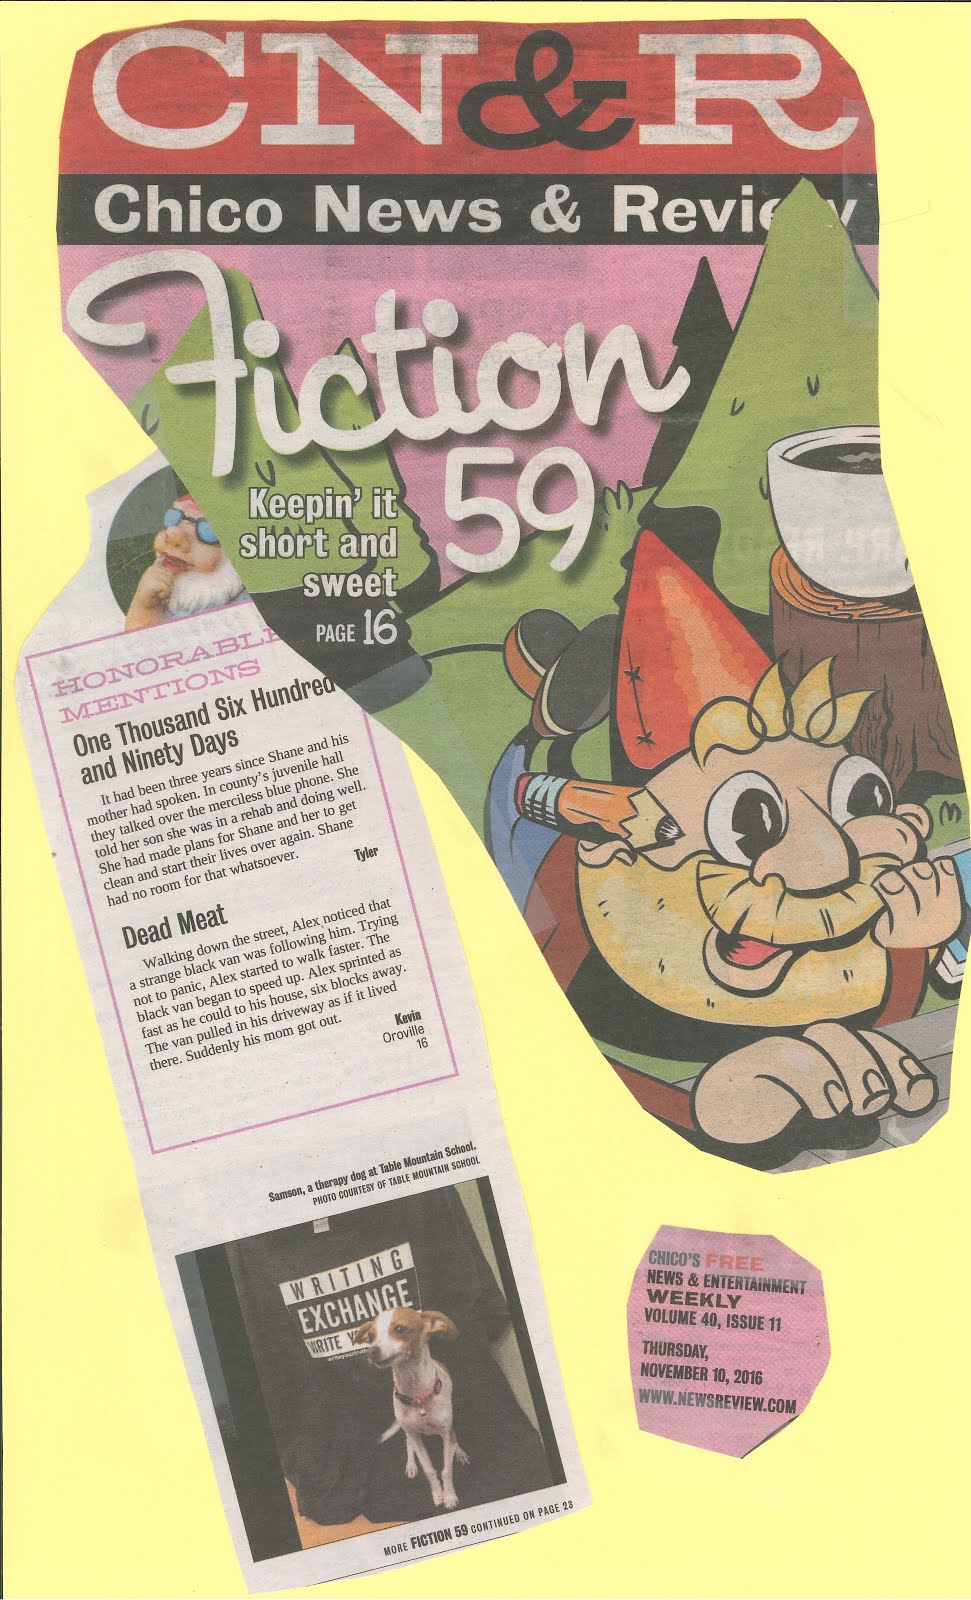 2016 CNR Fiction 59